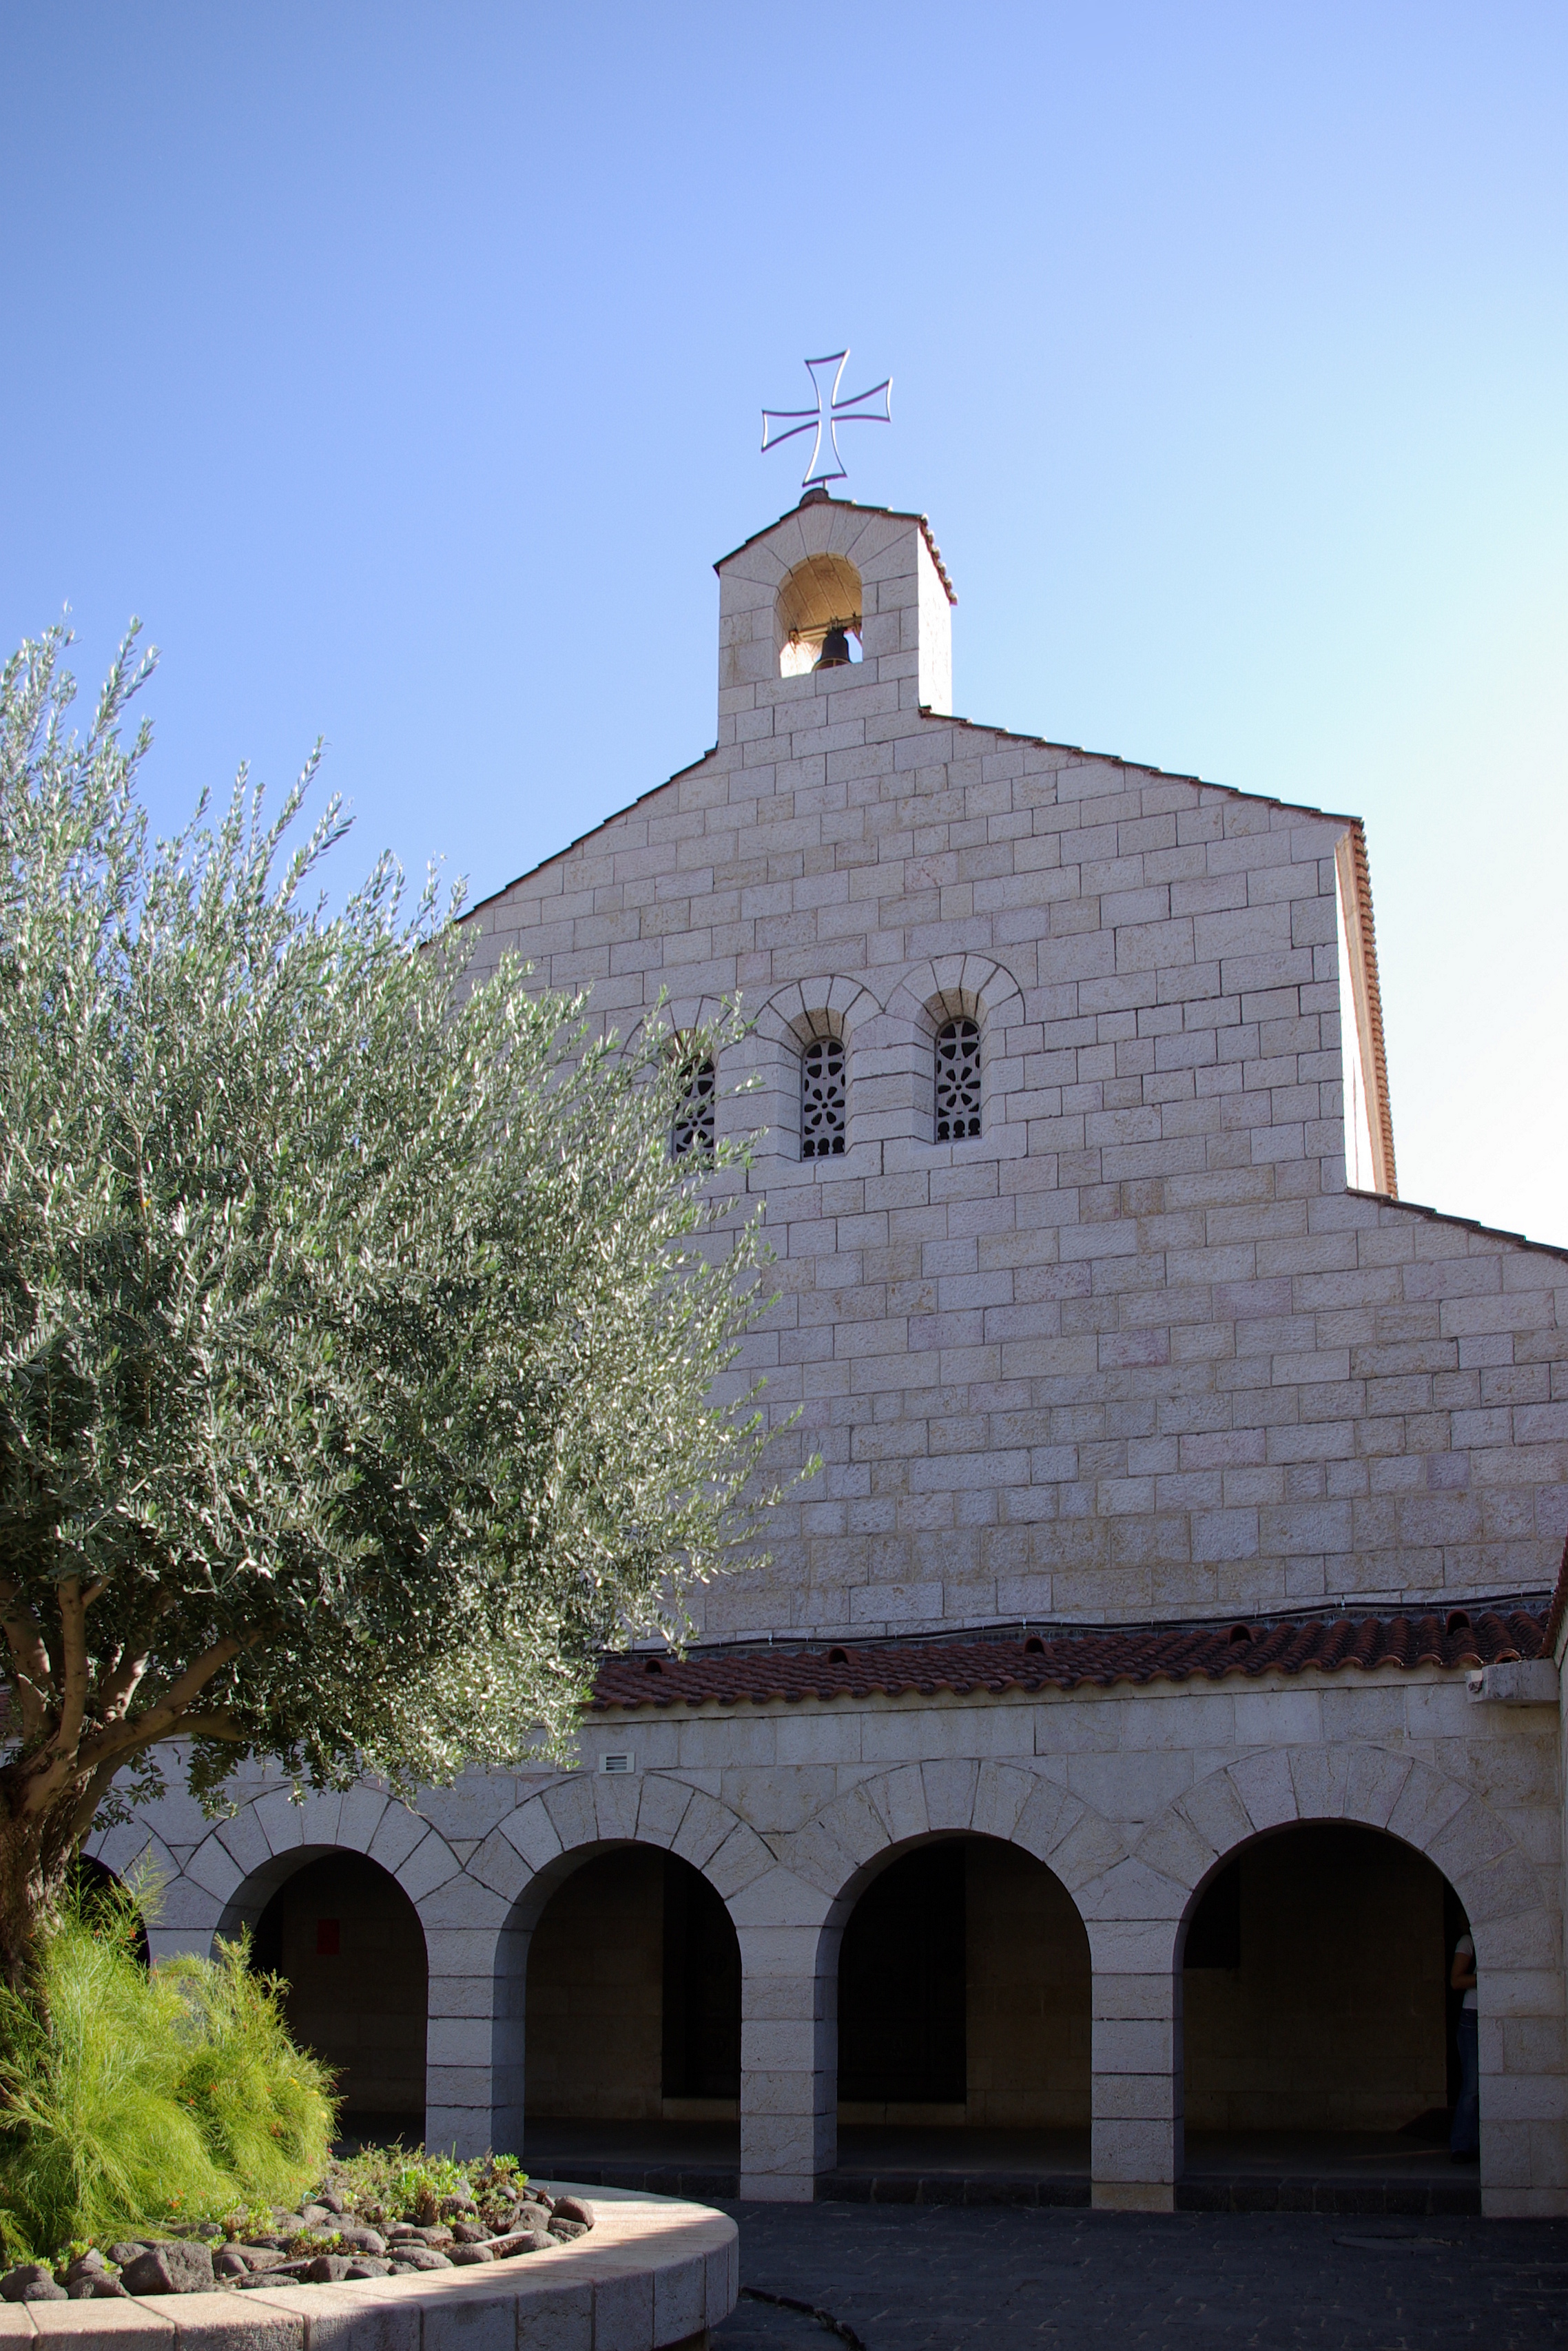 La facciata della chiesa della Moltiplicazione dei pani e dei pesci a Tabgha sul lago di Tiberiade